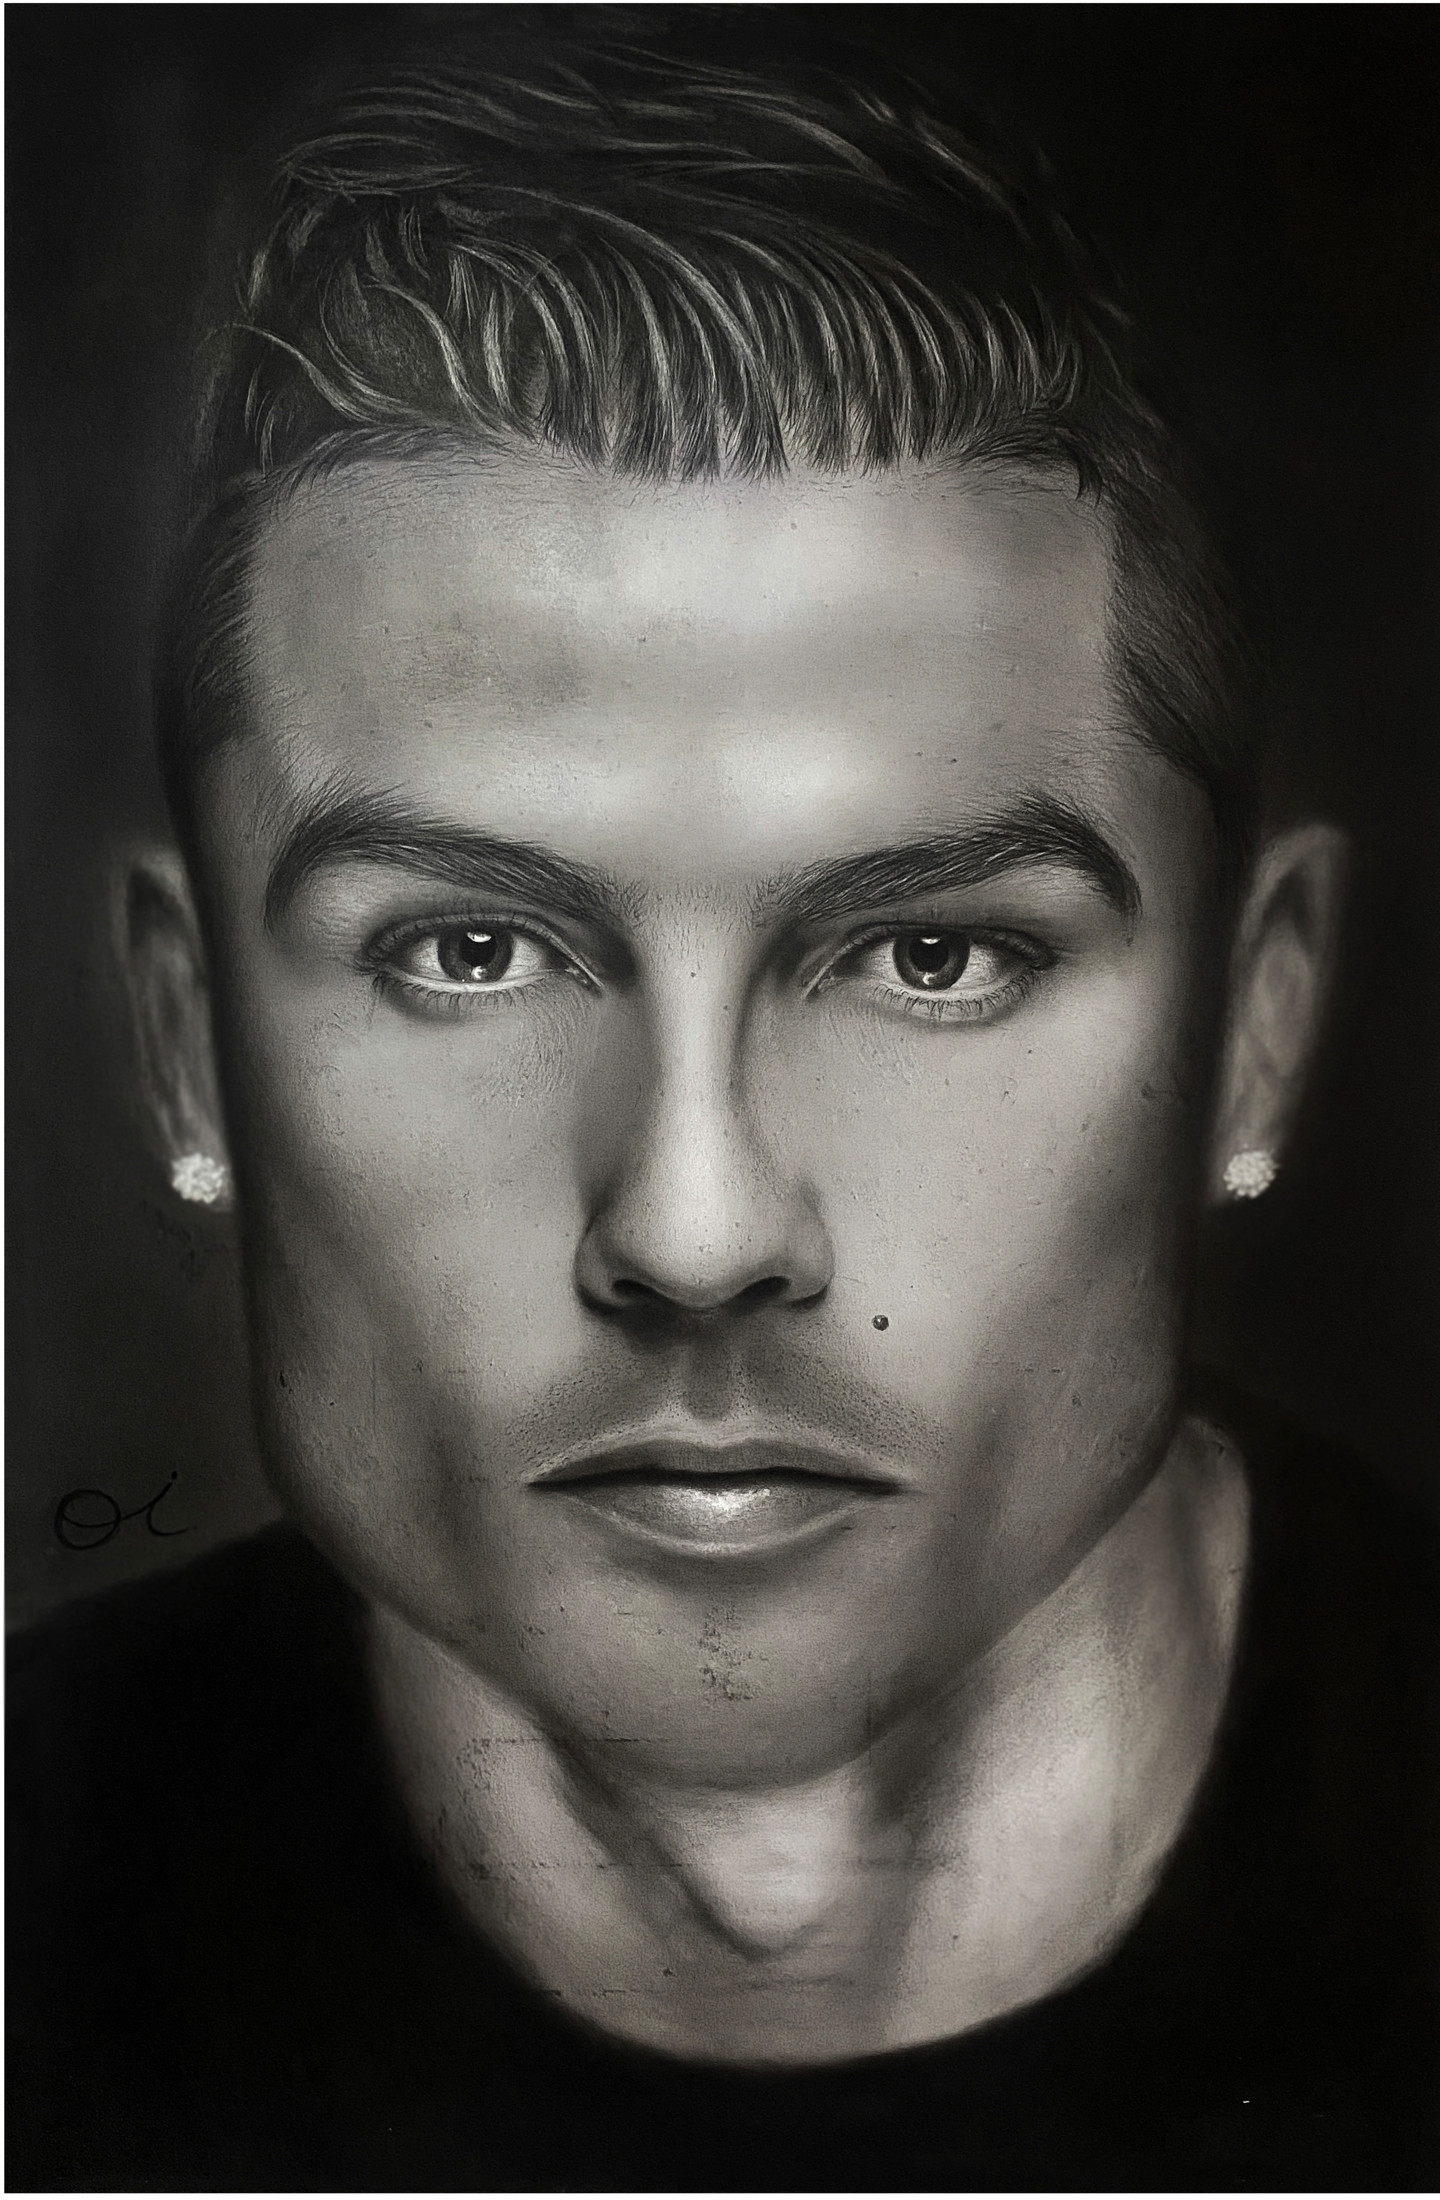 Hãy chiêm ngưỡng một bức tranh vẽ tuyệt đẹp về Cristiano Ronaldo, ngôi sao bóng đá hàng đầu của chúng ta. Các chi tiết được thể hiện một cách chân thật và sinh động, chắc chắn sẽ làm bạn ngất ngây!